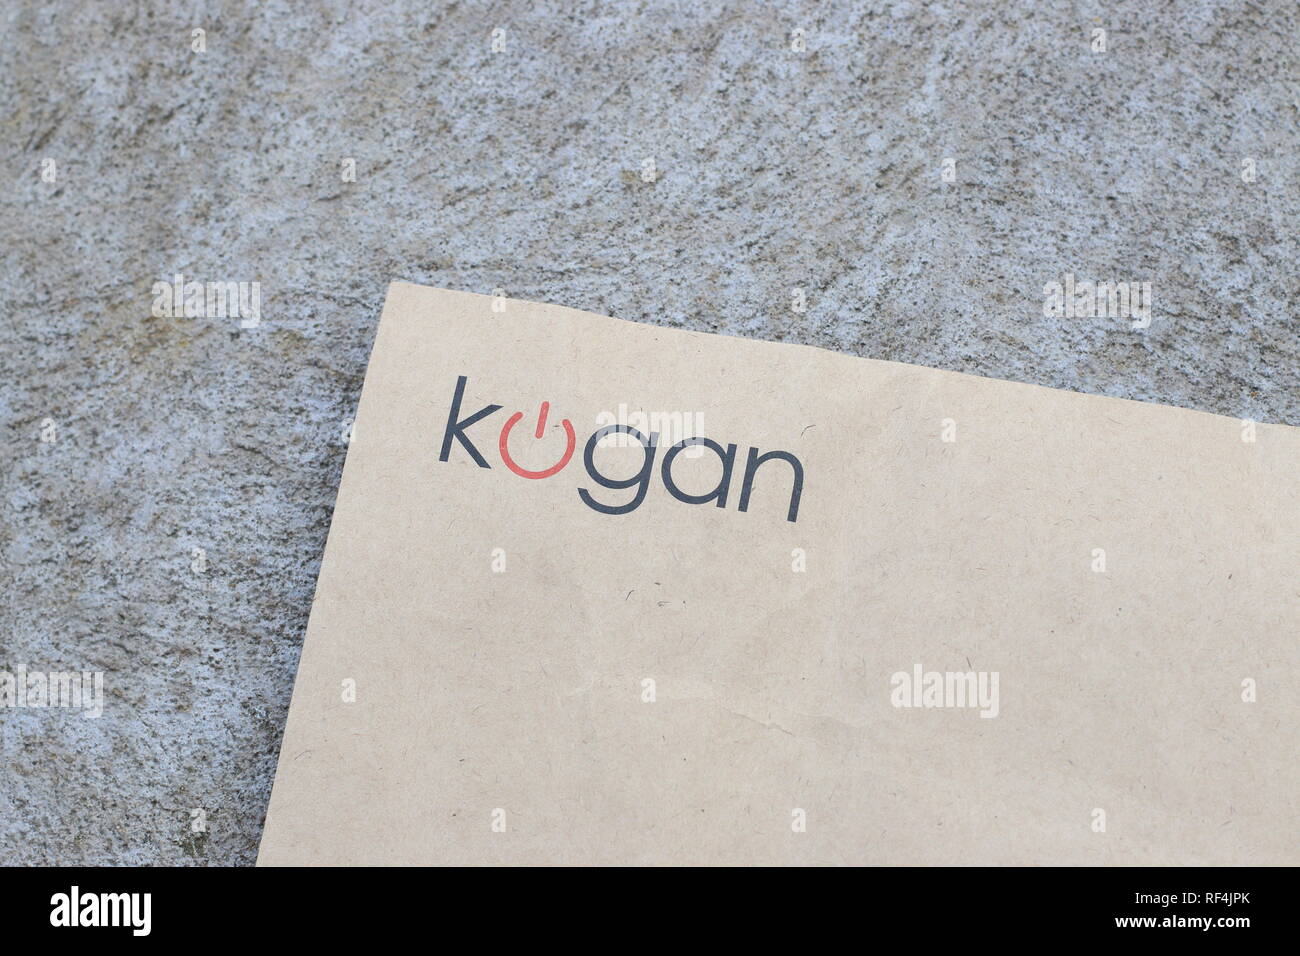 Kogan - commerce de détail de l'Australie Banque D'Images